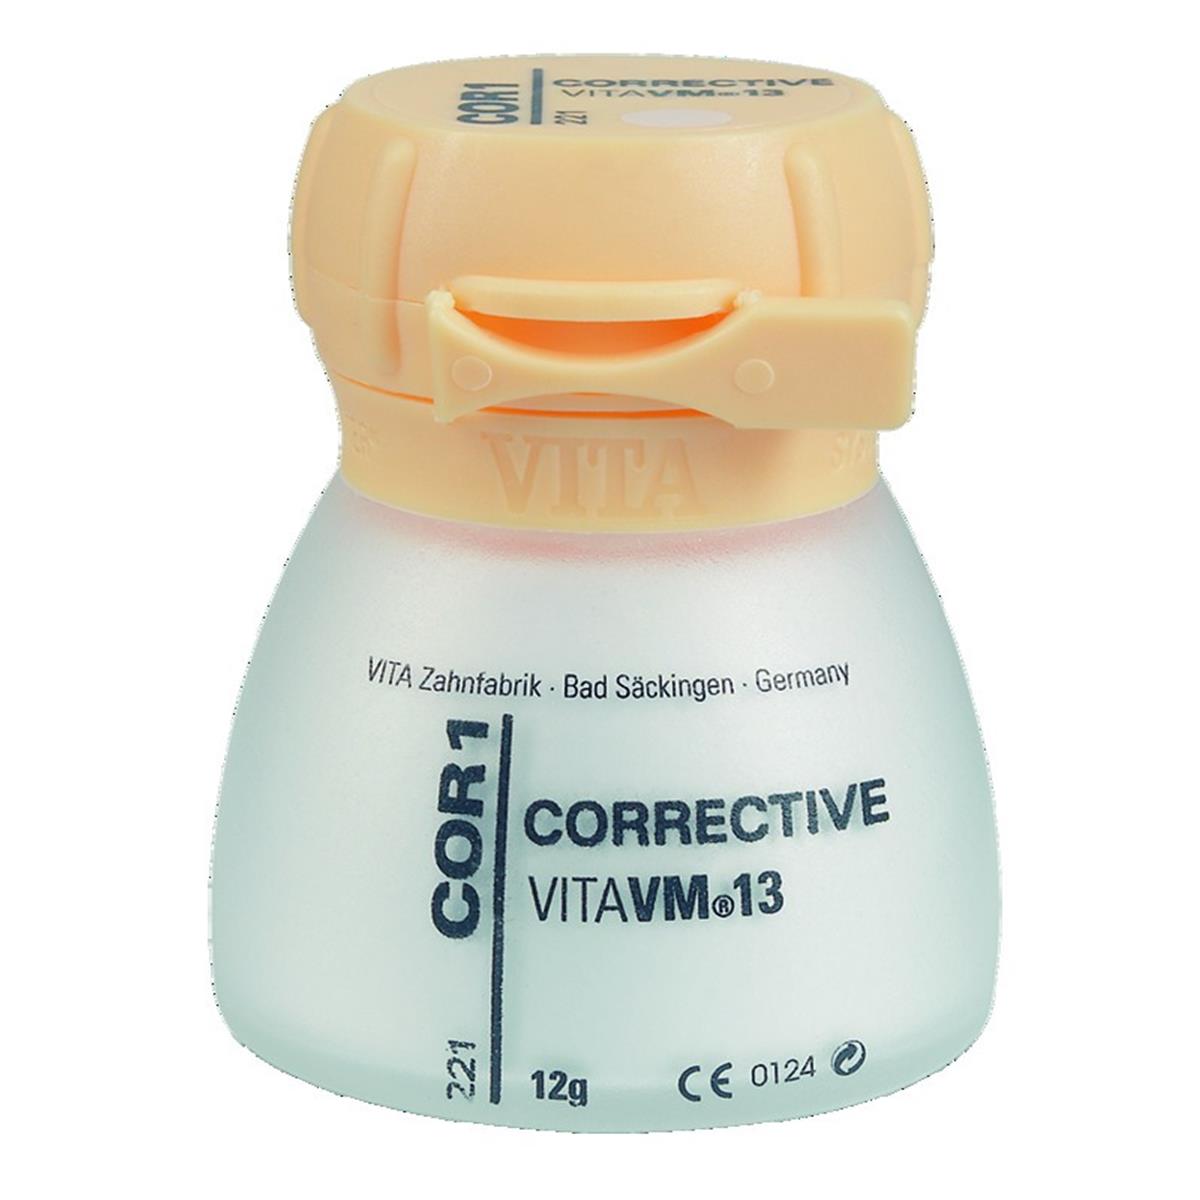 VM13 VITA - Corrective - COR2 - Le pot de 12 g